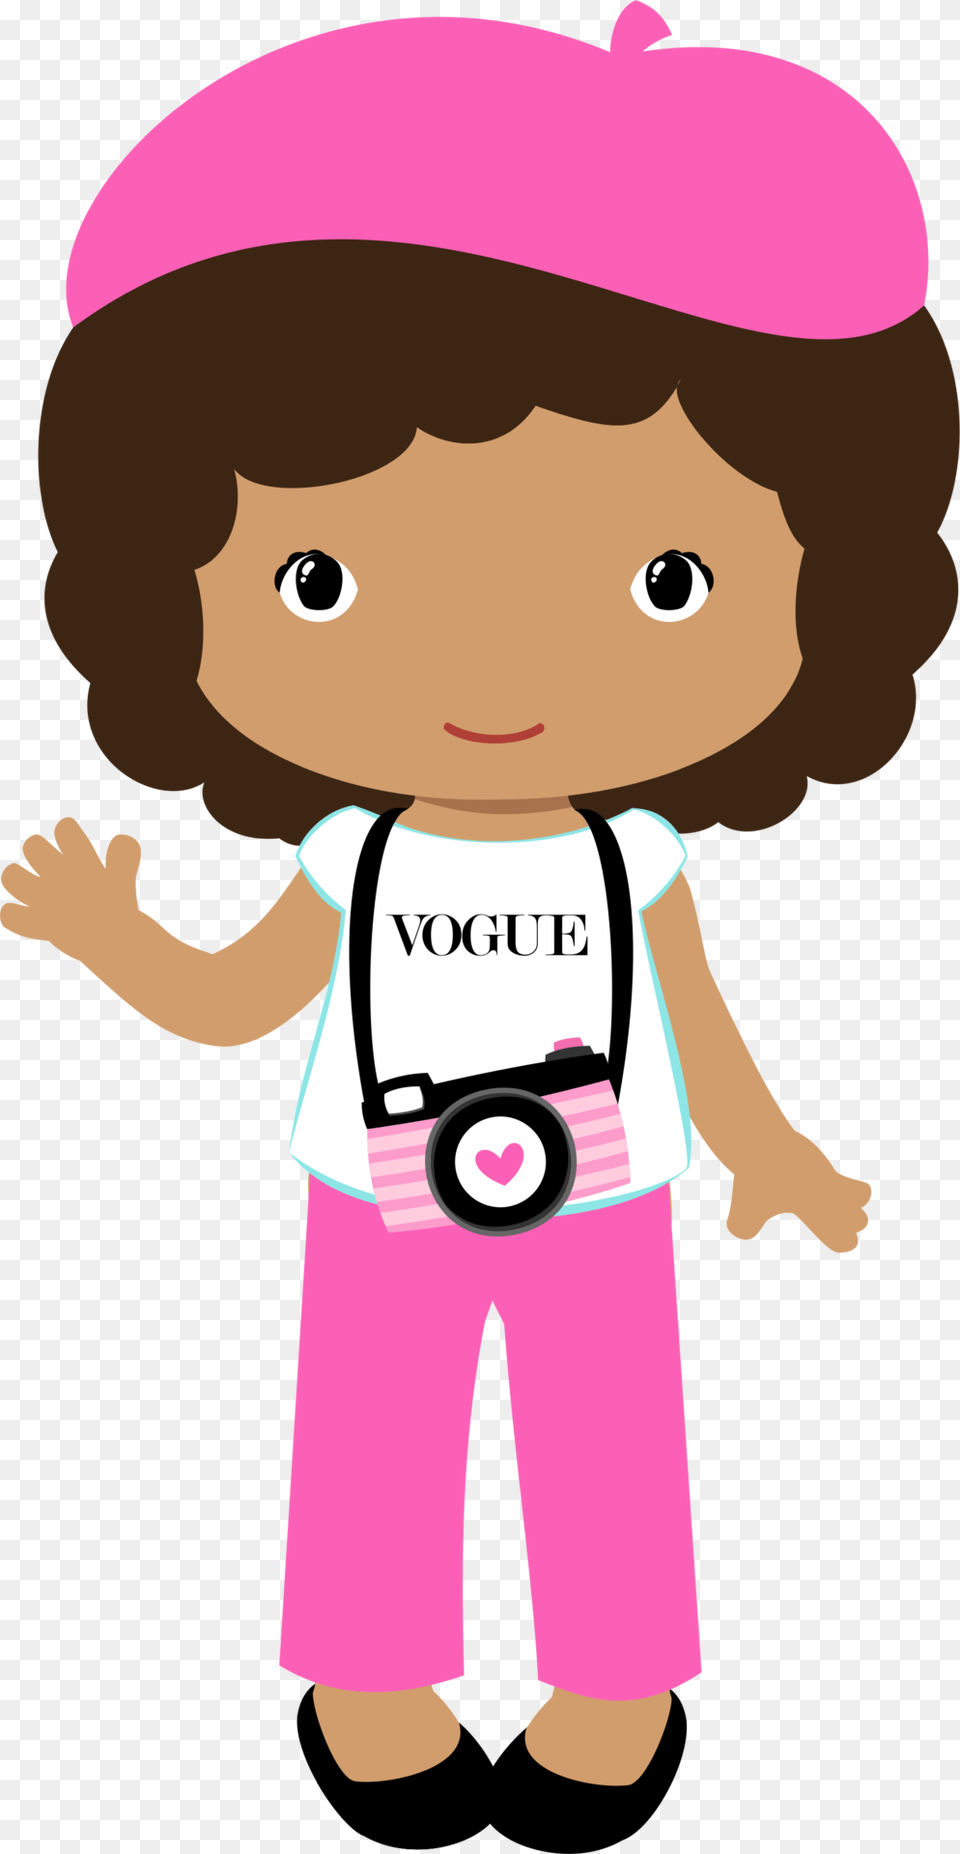 Transparent Lasagna Clipart Doll Clipart Paris Vogue, Baby, Person, Face, Head Free Png